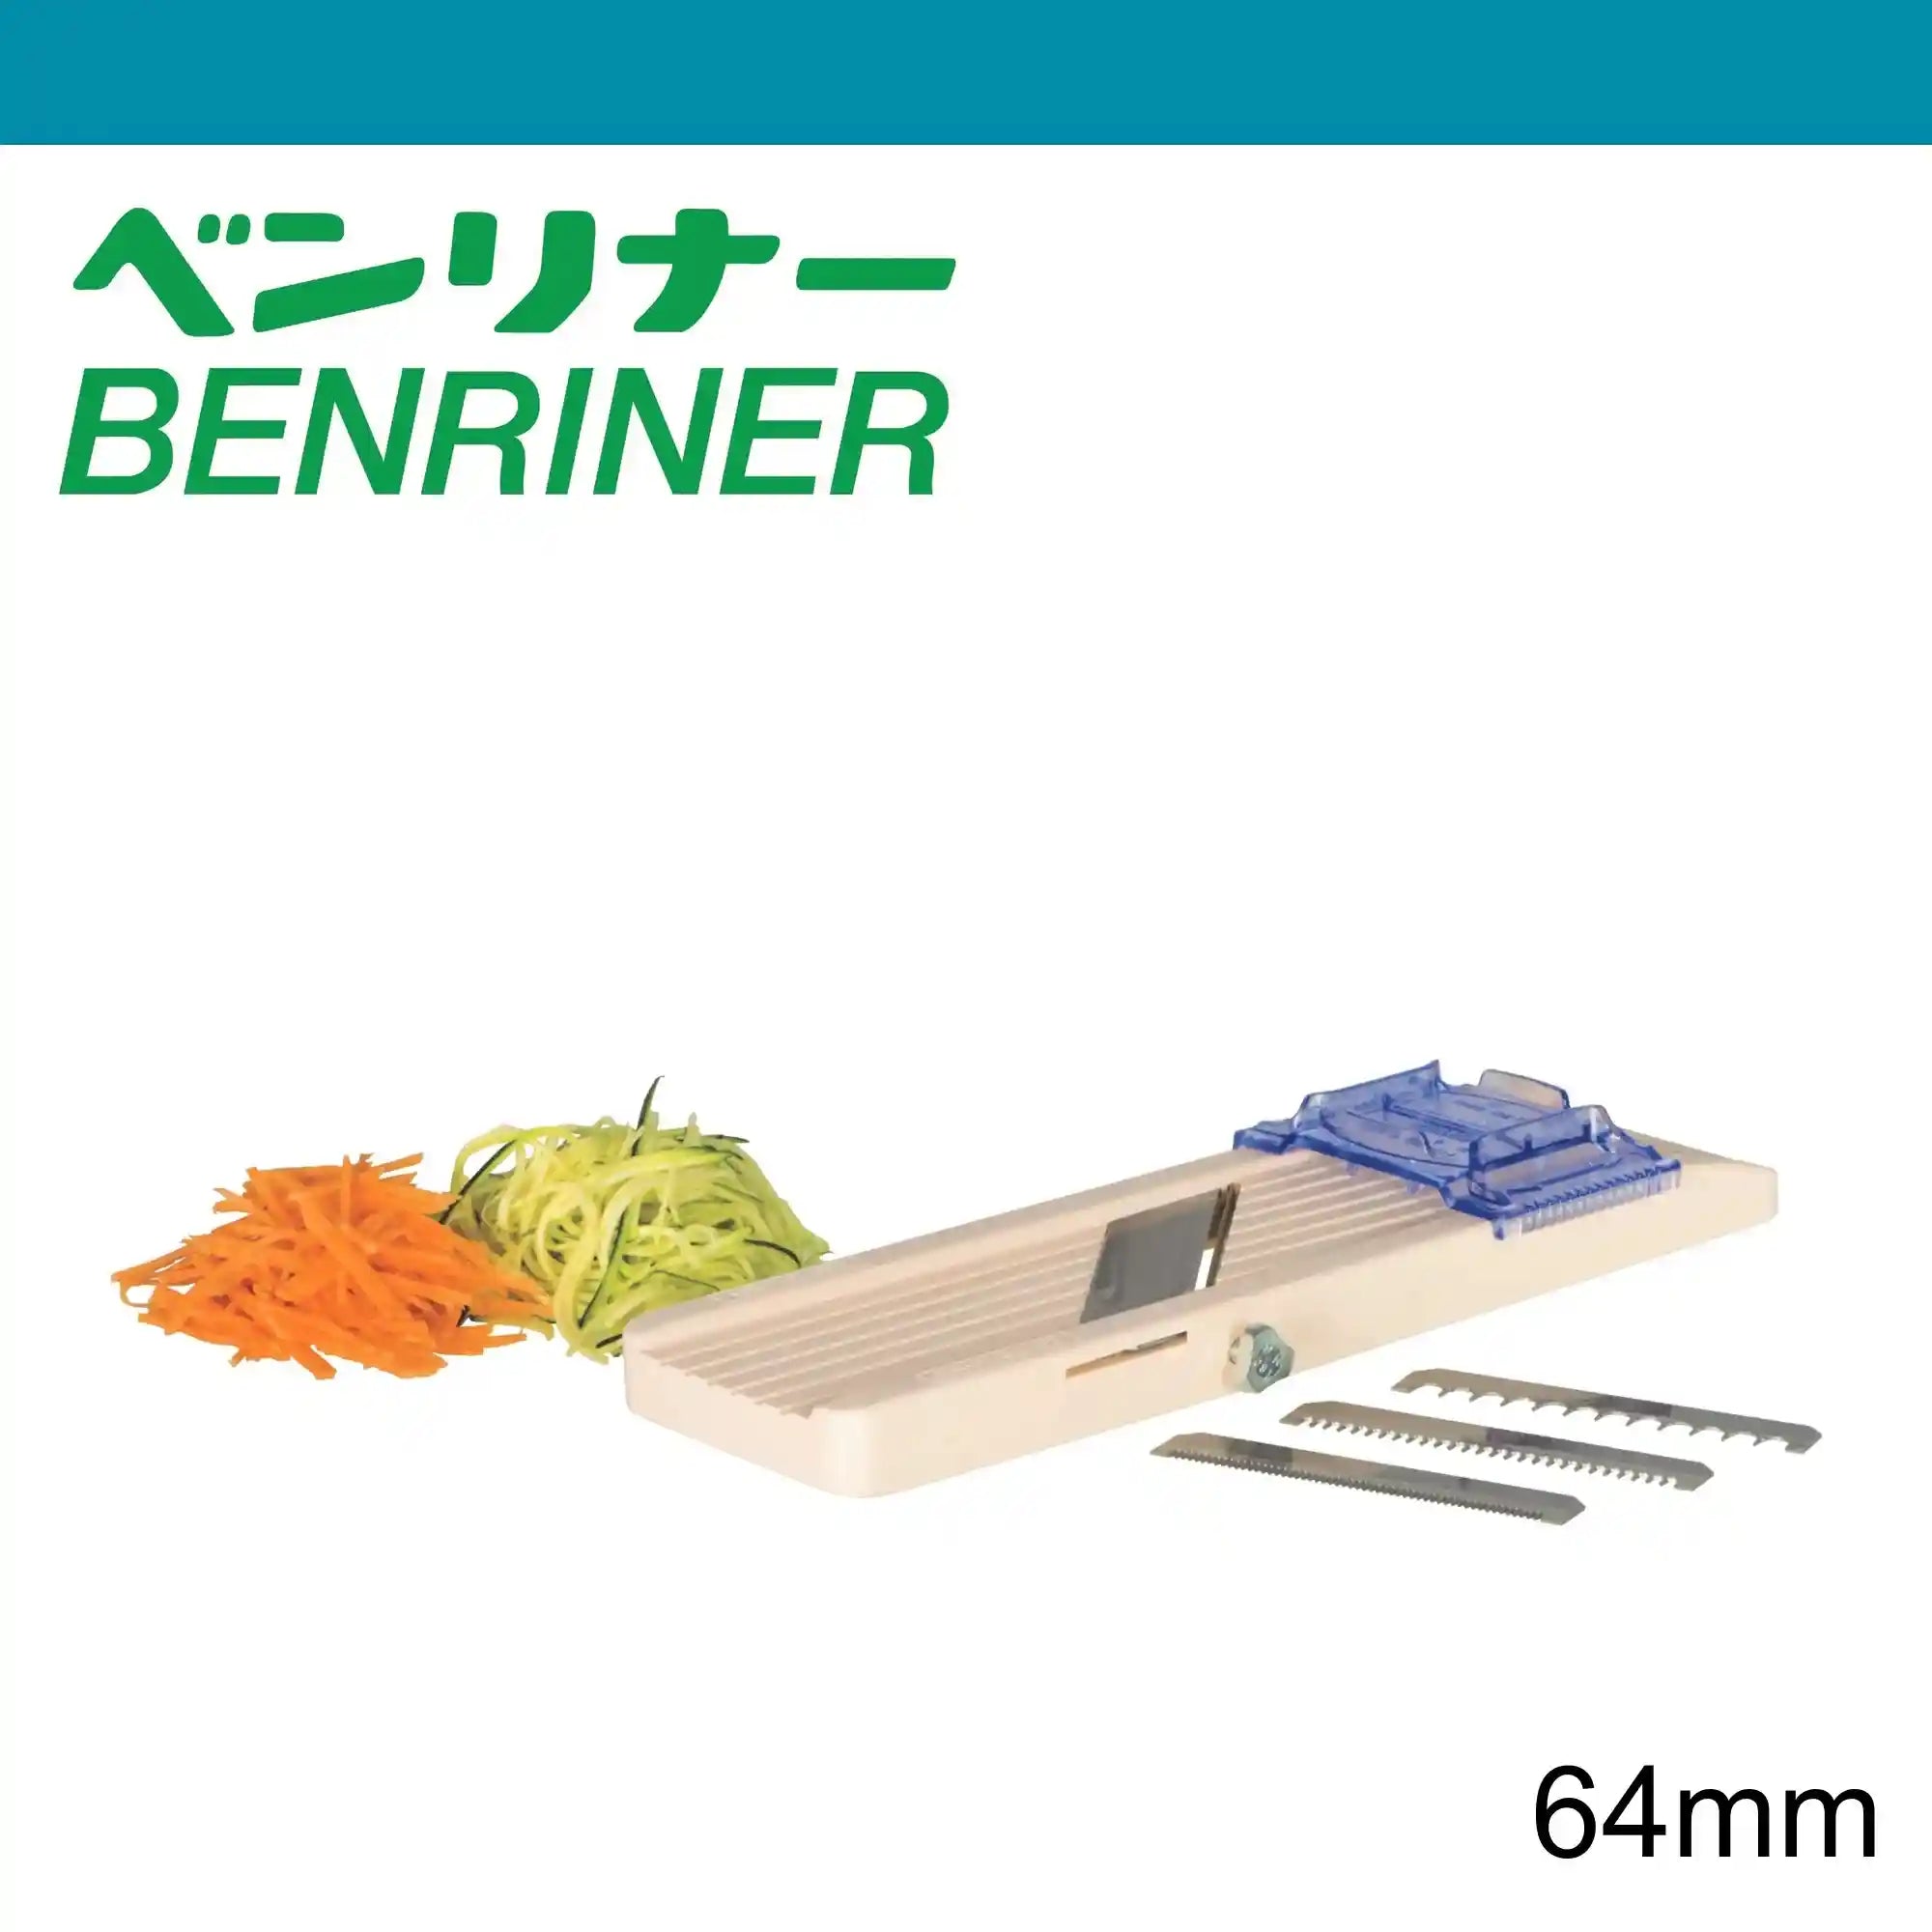 Benriner Mandoline Vegetable Slicer 64mm